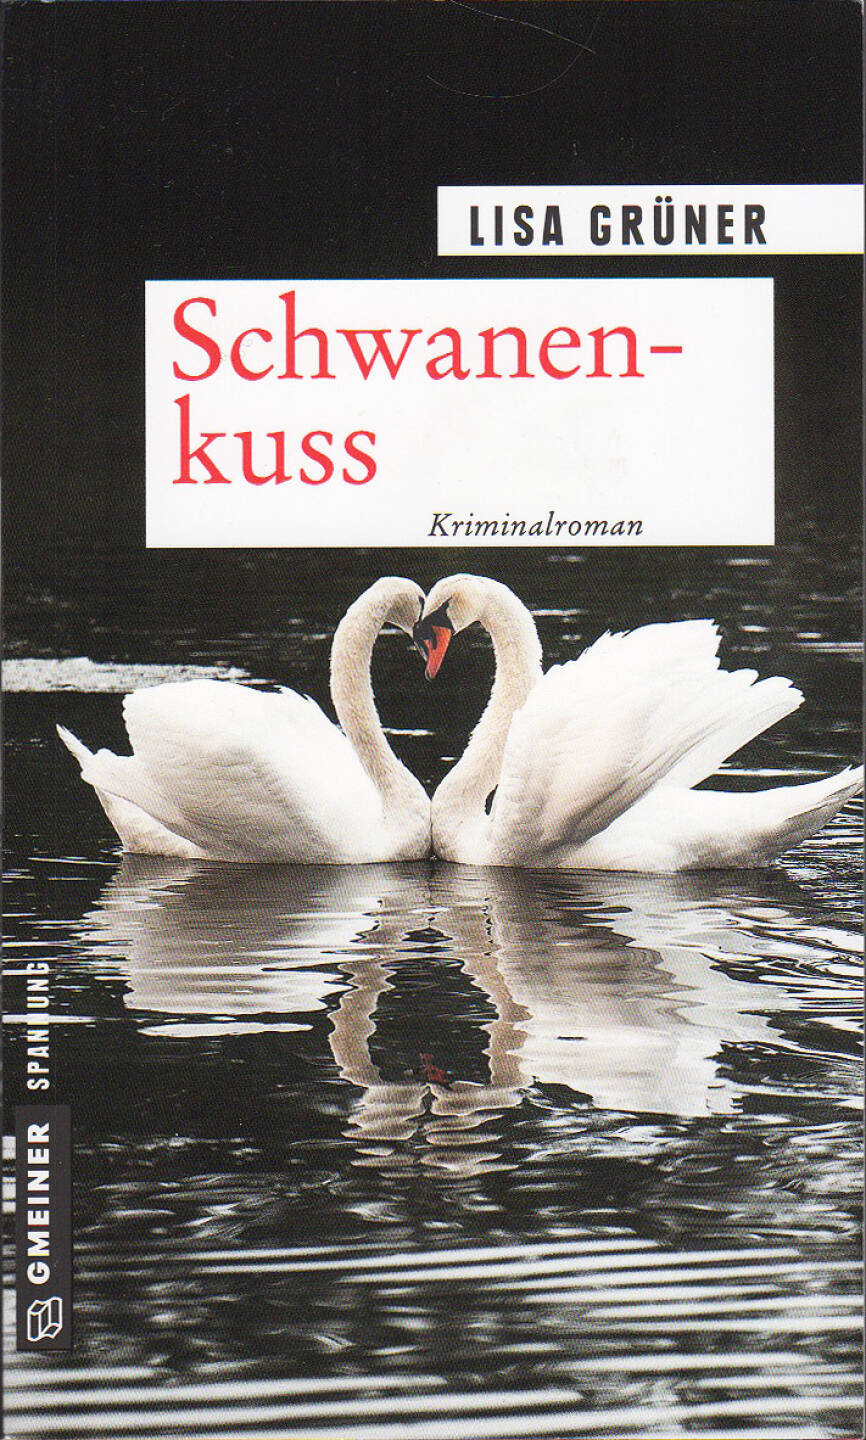 Lisa Grüner - Schwanenkuss - https://boerse-social.com/financebooks/show/lisa_gruner_-_schwanenkuss